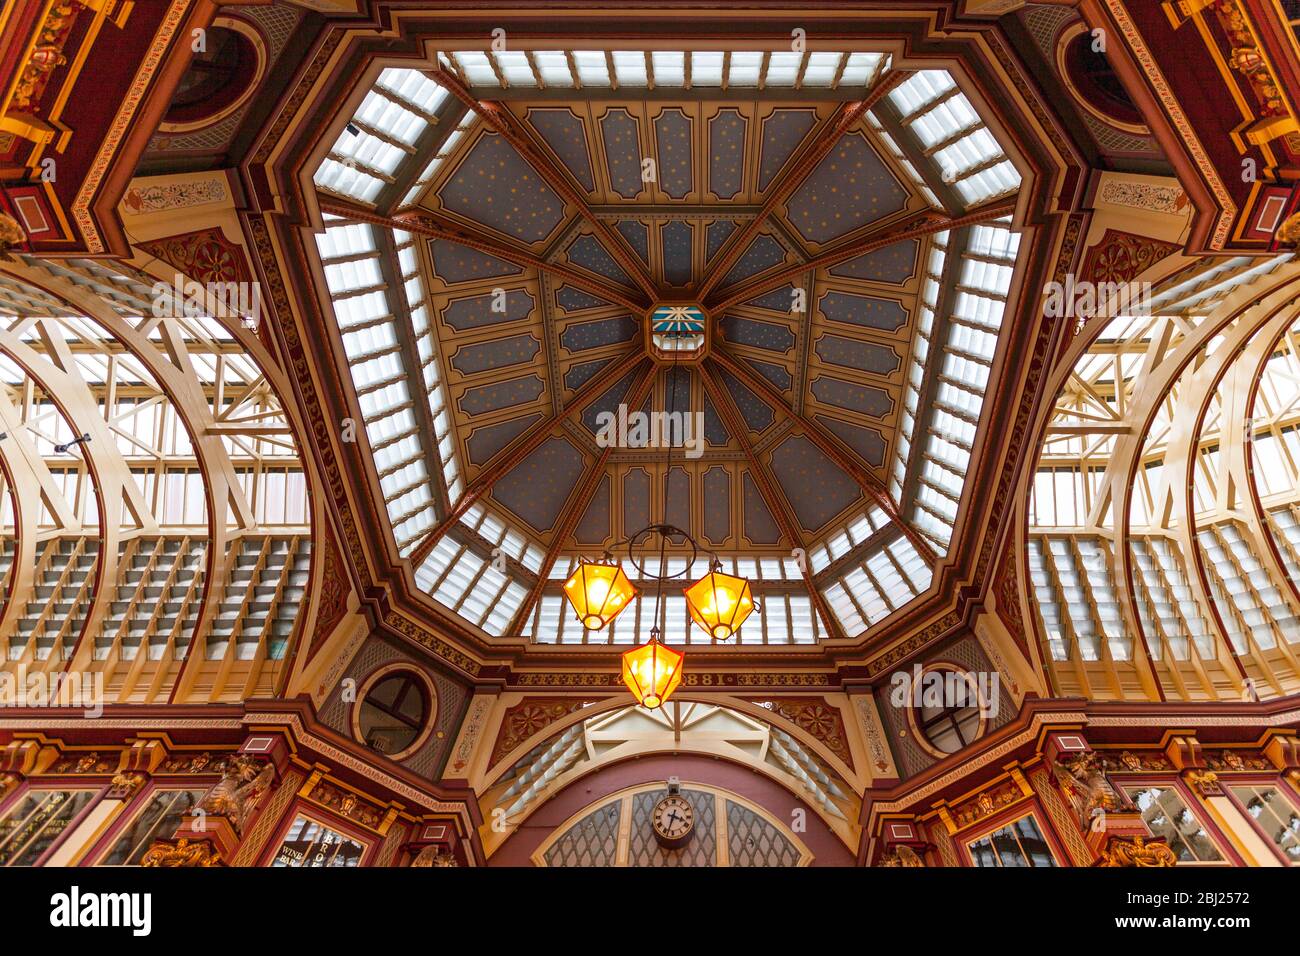 Le plafond orné du centre du marché du Leadenhall victorien conçu par Sir Horace Jones , Londres, Angleterre Banque D'Images